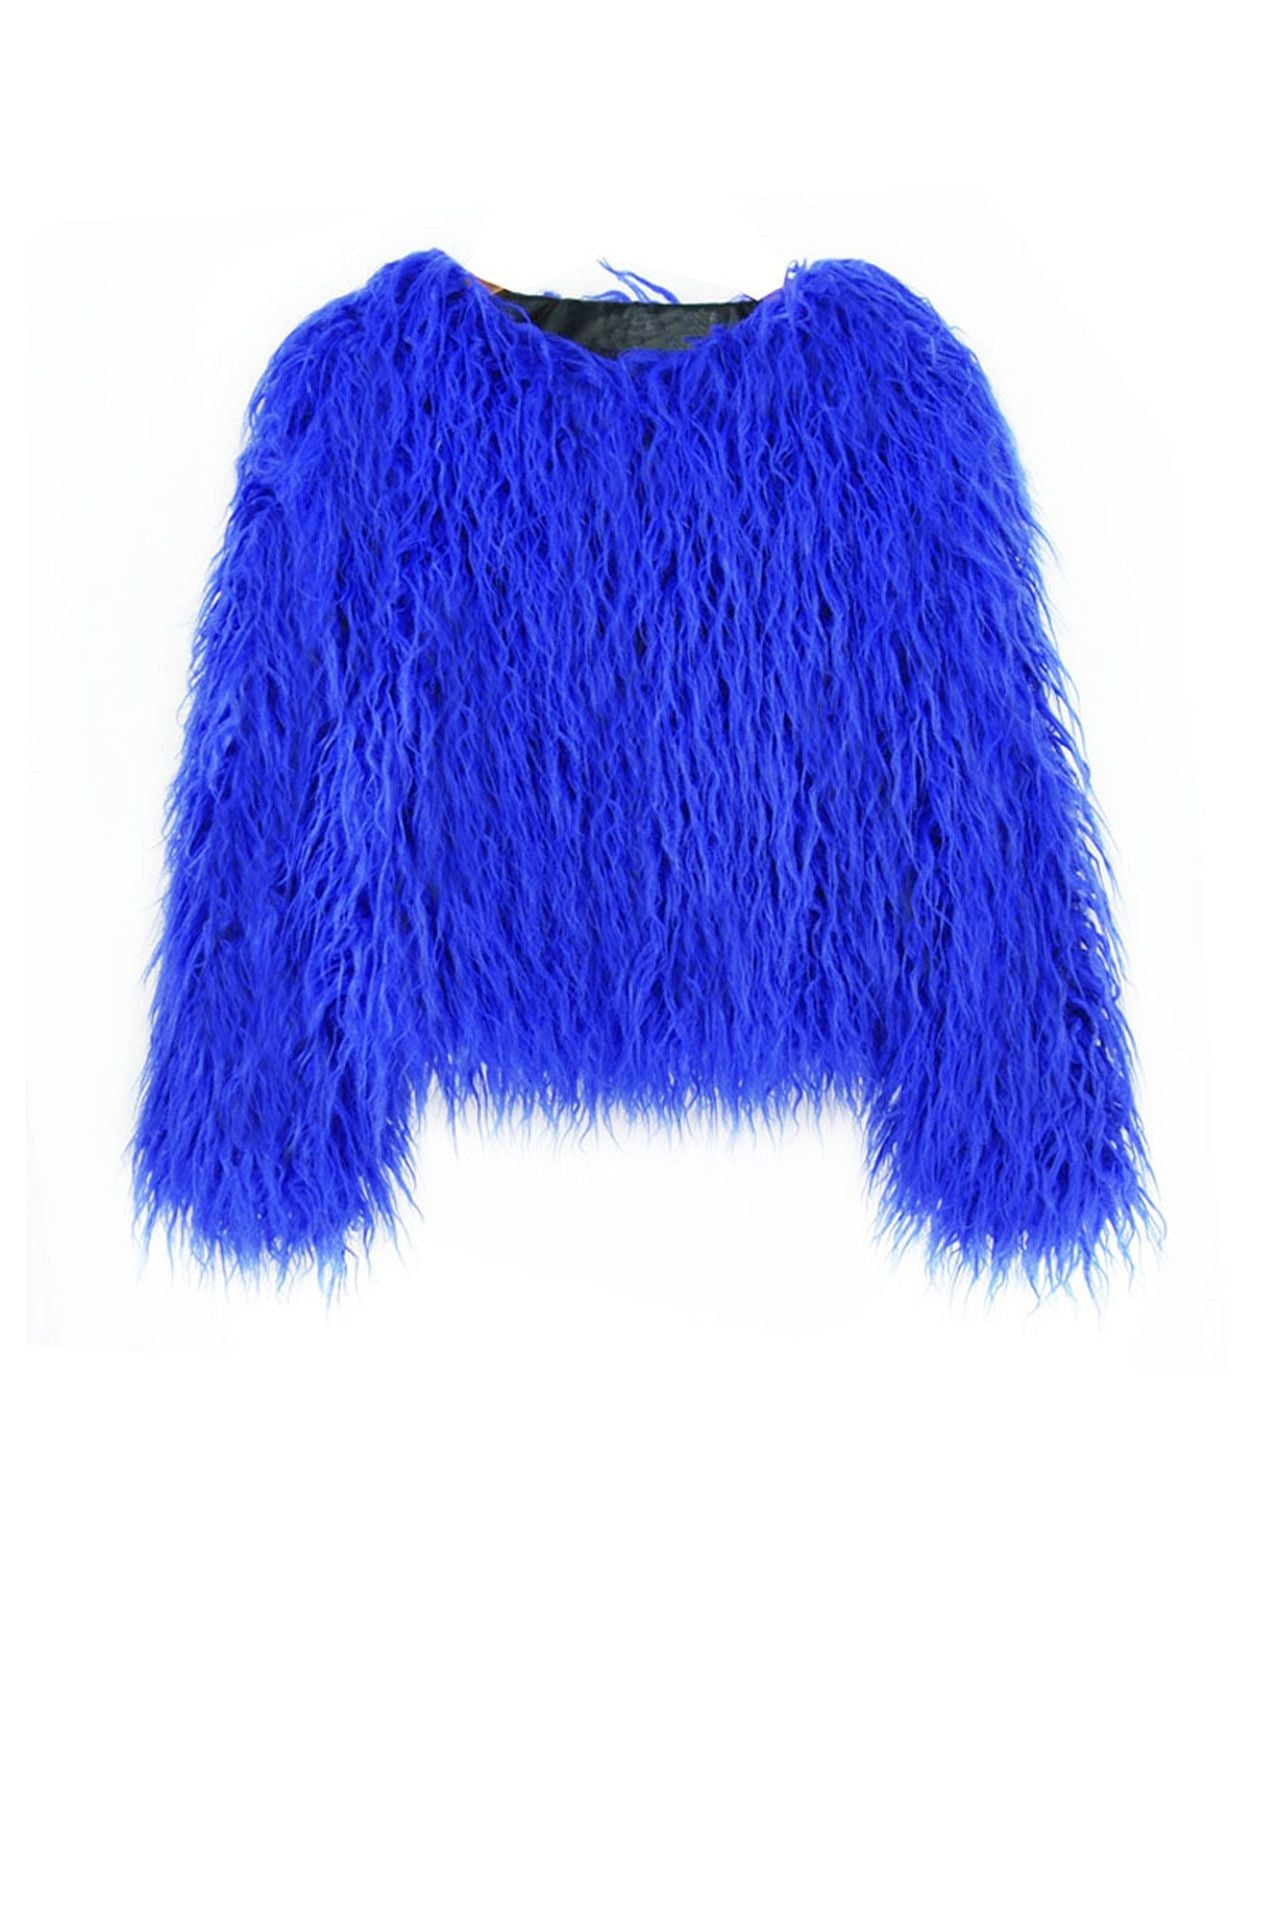 Faux Fur Jacket in Blue | Blue Faux Fur Coat | Vegan Jacket in Blue ...